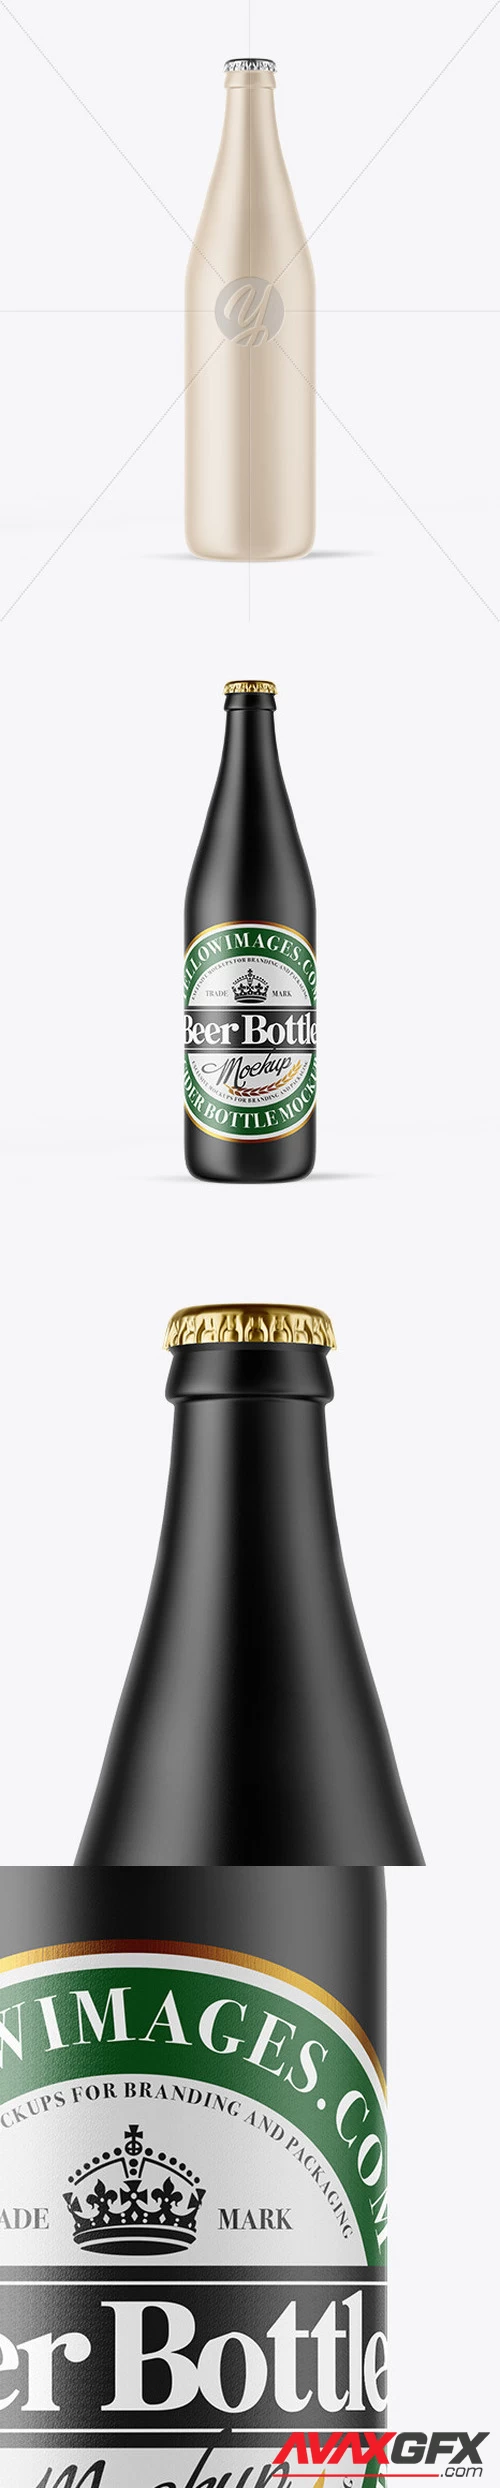 Ceramic Beer Bottle Mockup 49926